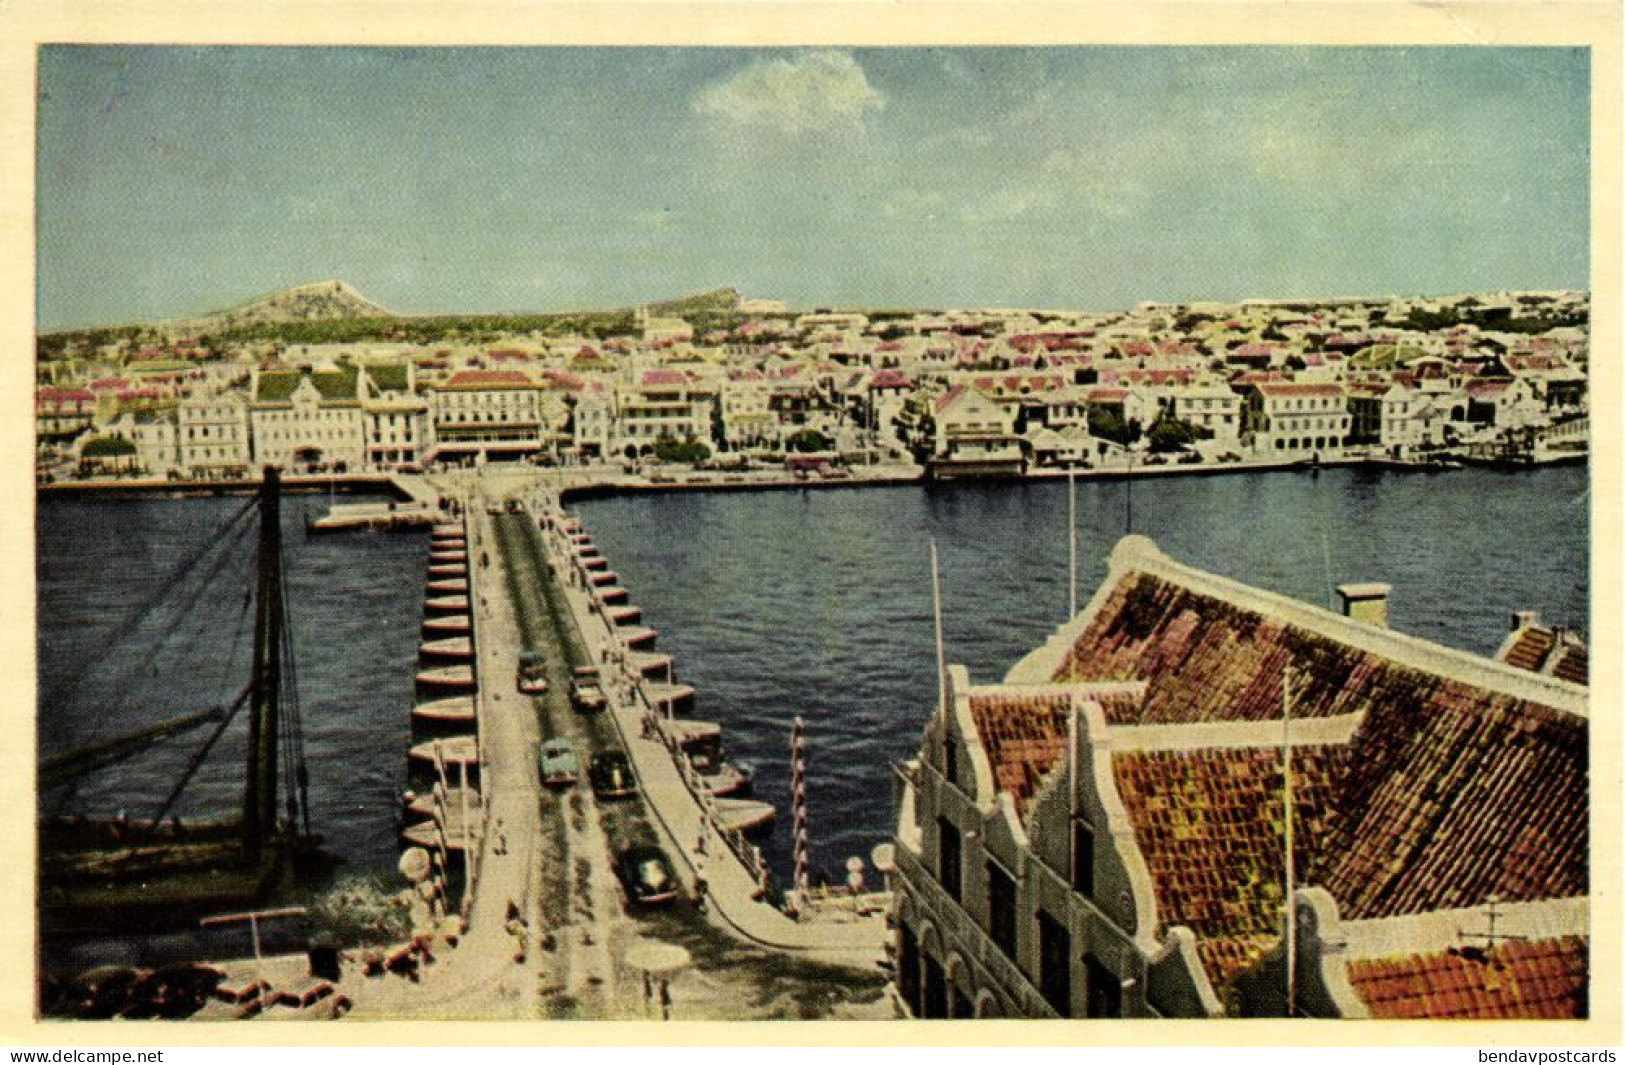 Curacao, N.A., WILLEMSTAD, Pontoon Bridge (1950s) Curiosa Postcard (2) - Curaçao